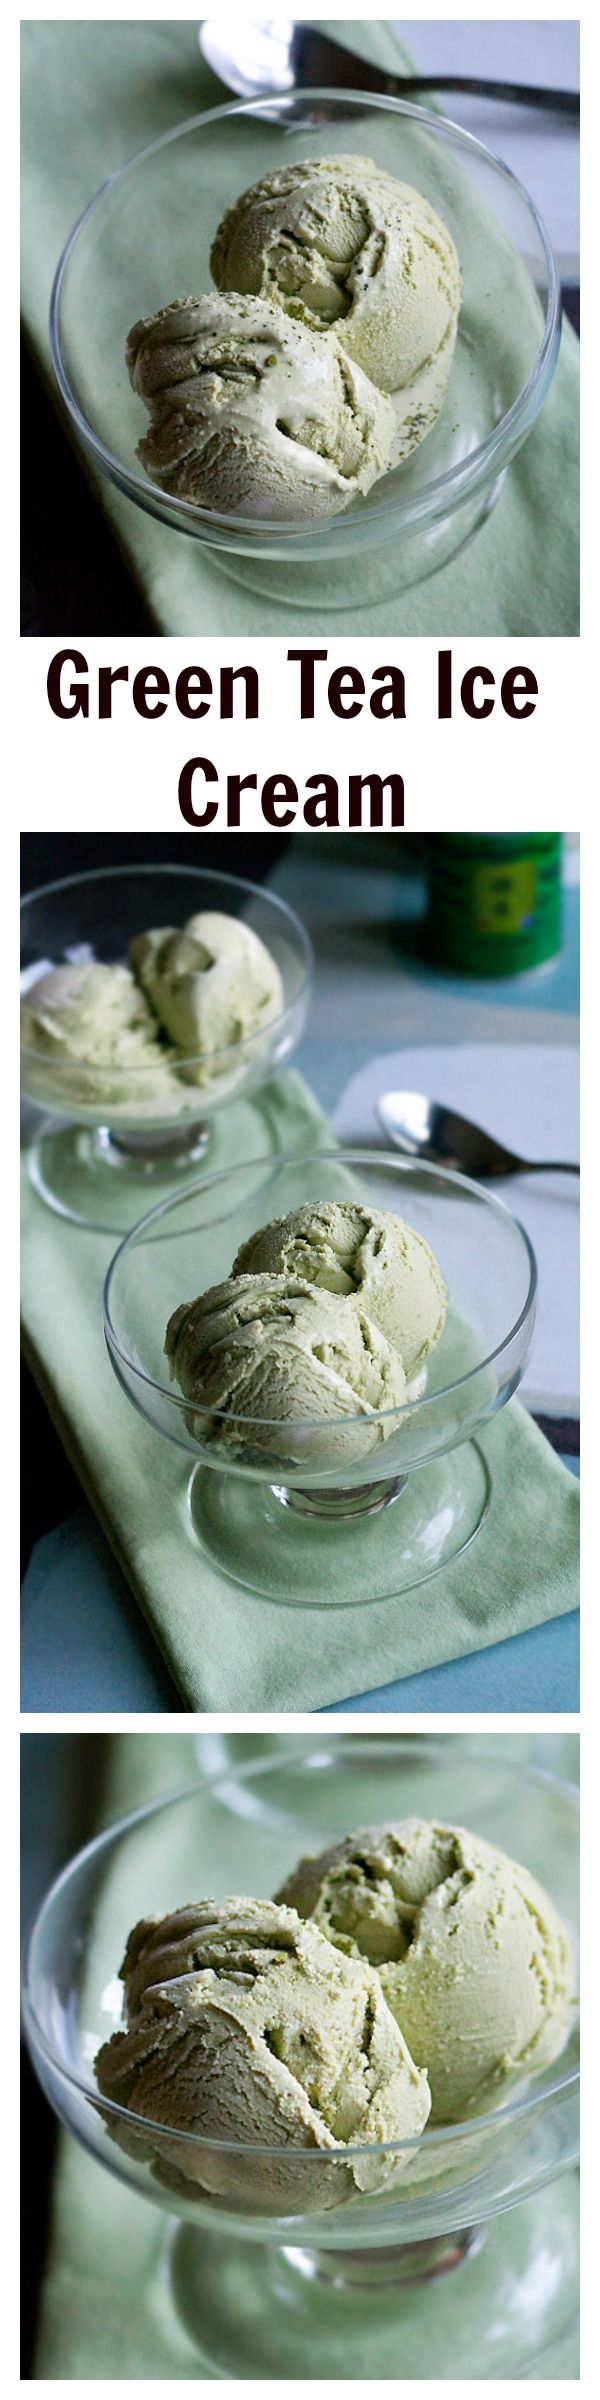 Recette de crème glacée au matcha (thé vert) la plus facile qui ne prend que 2 ingrédients et vous n'avez pas à payer 3 $ la cuillère |  rasamalaysia.com